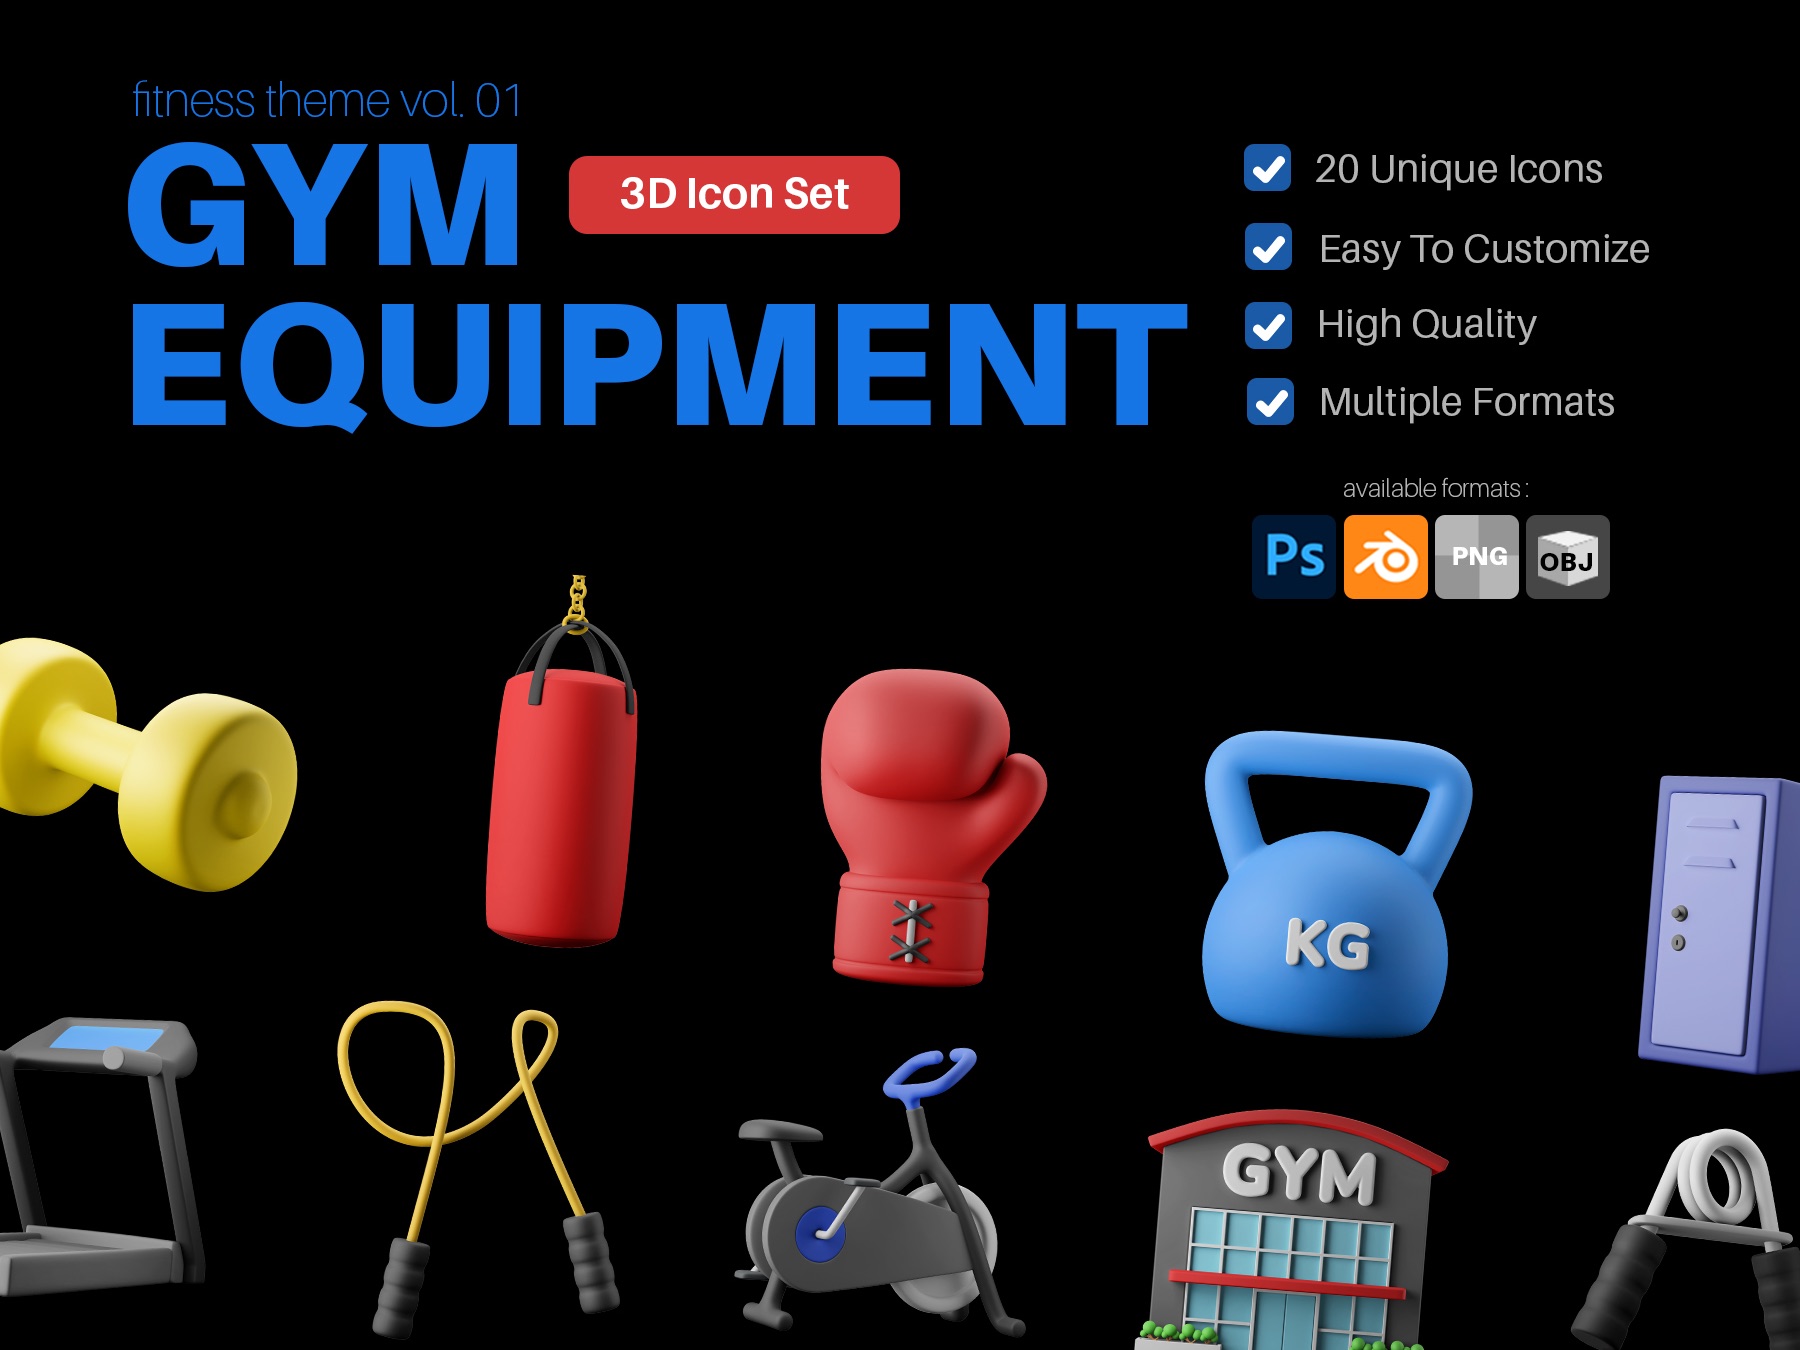 20个高质量健身健身器材3D图标icon .blend .psd .obj .png .jpg素材